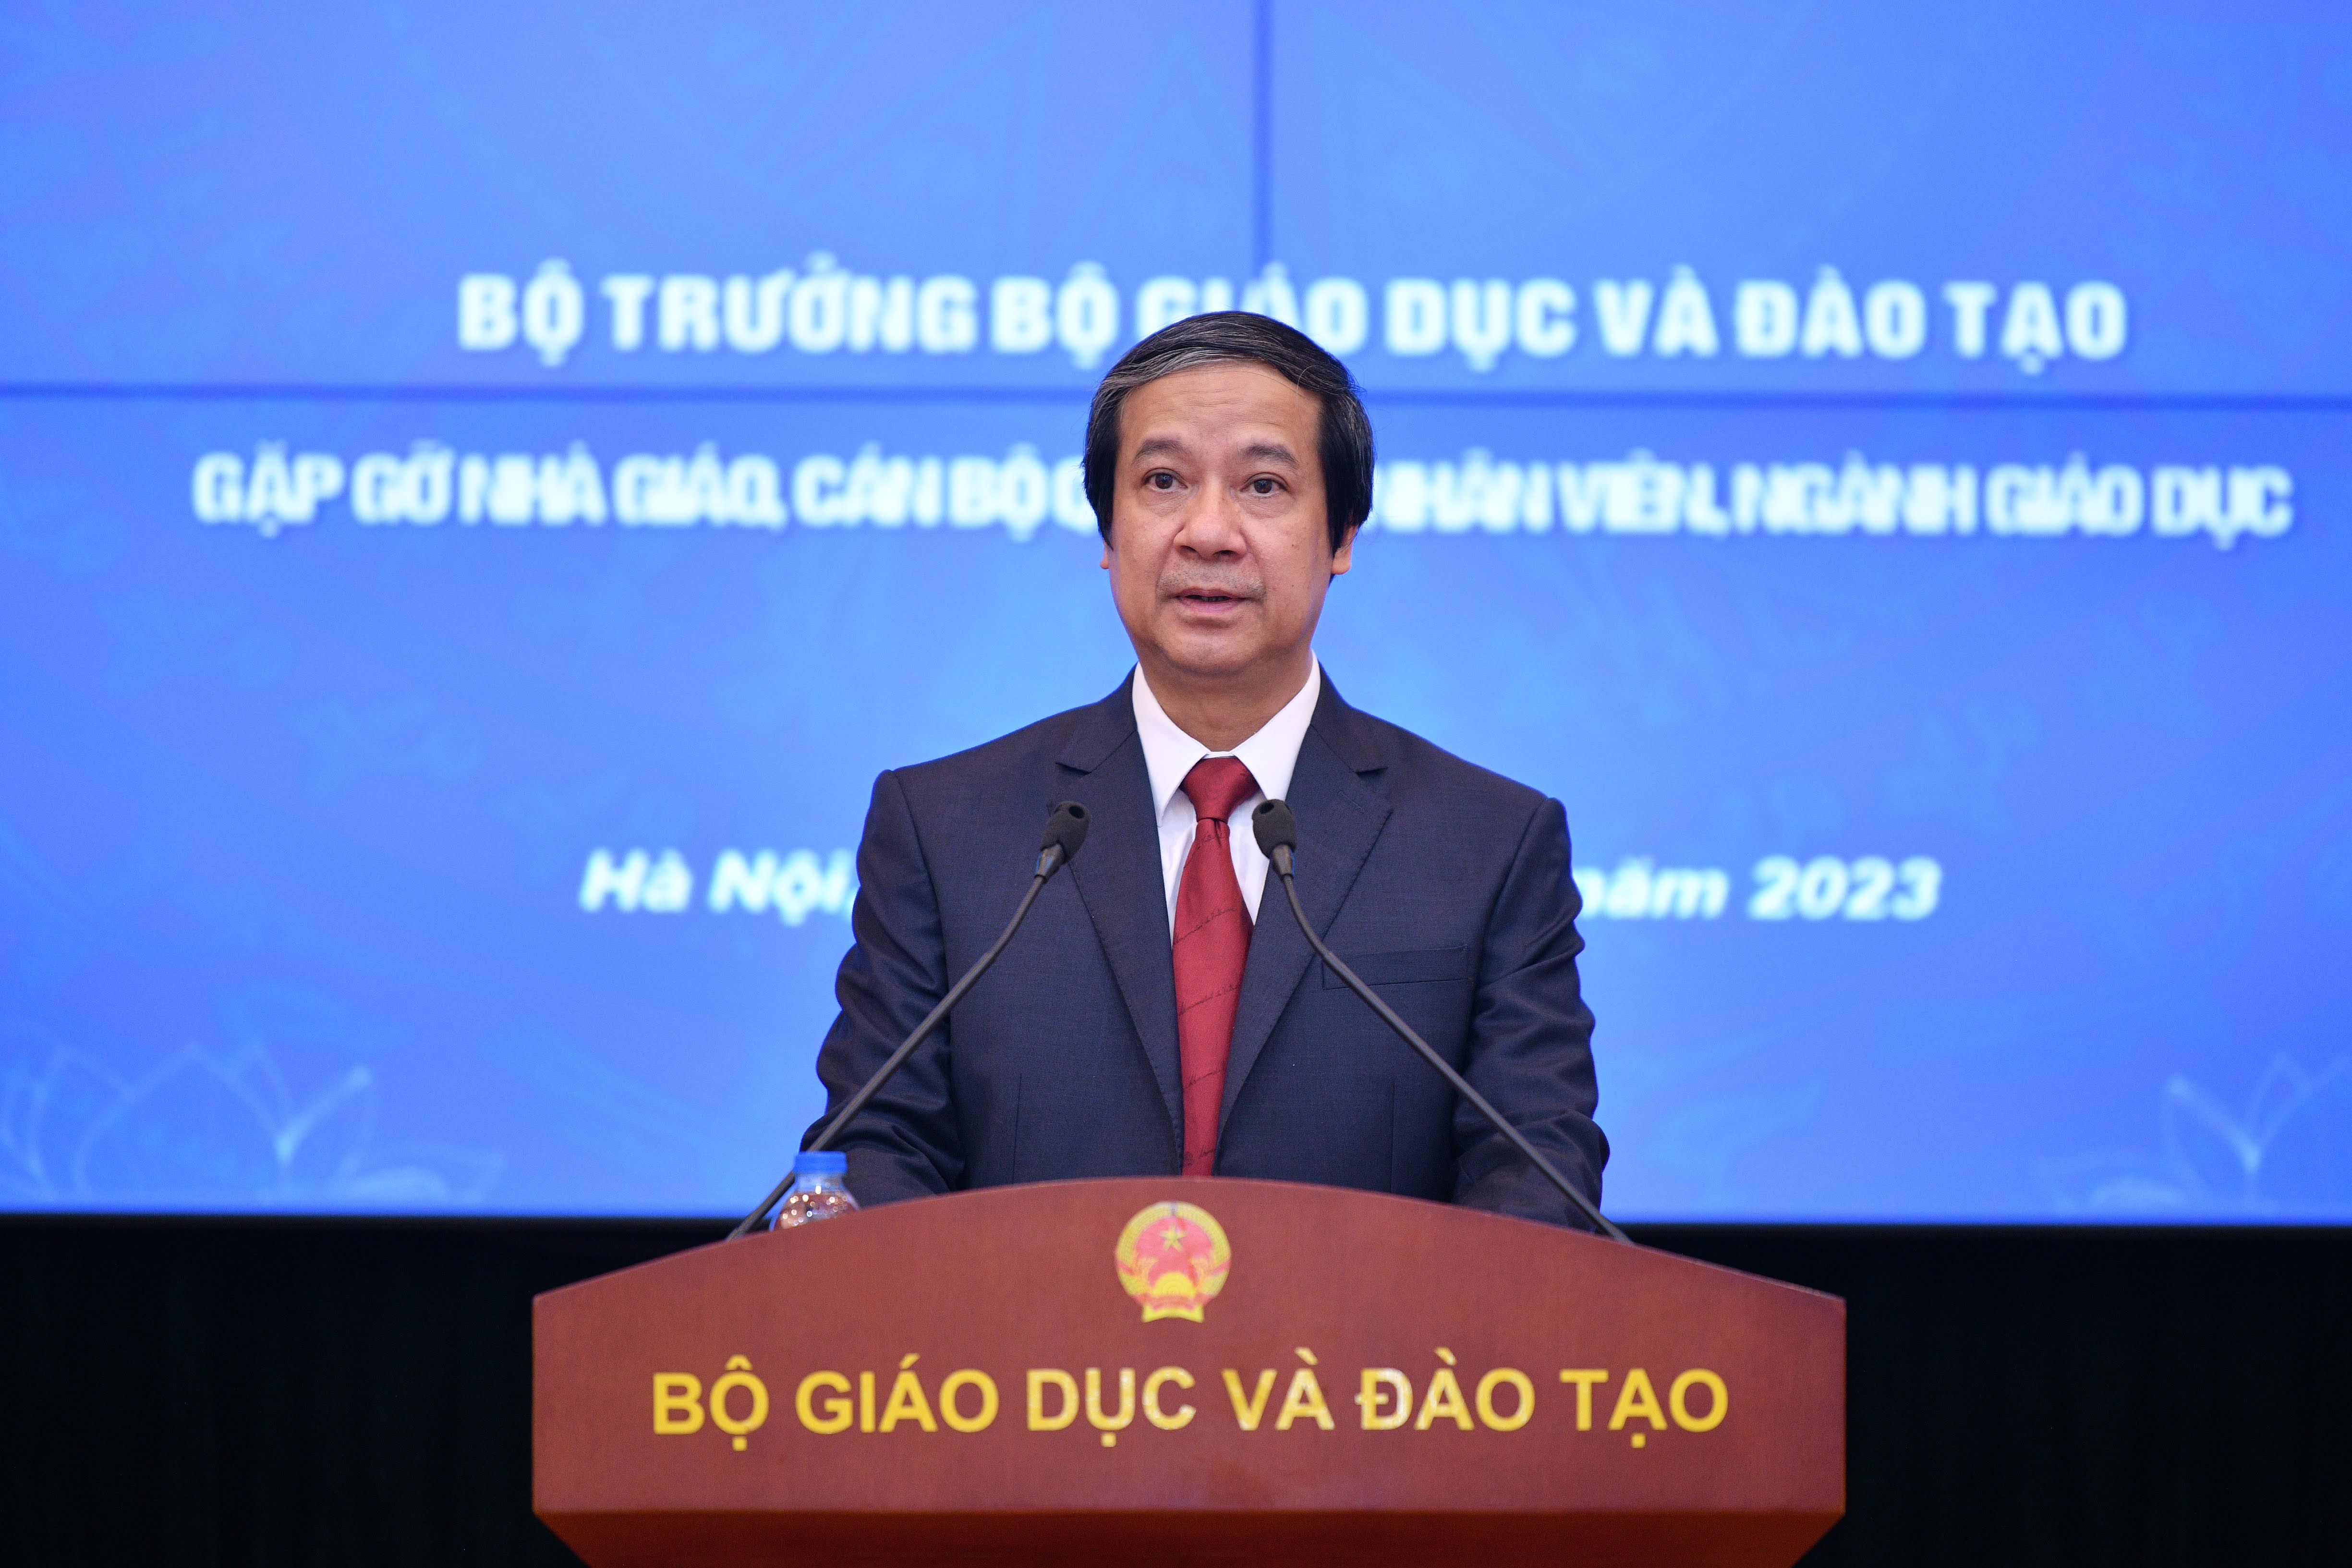 Bộ trưởng Nguyễn Kim Sơn phát biểu tại buổi gặp gỡ chiều 15/8.